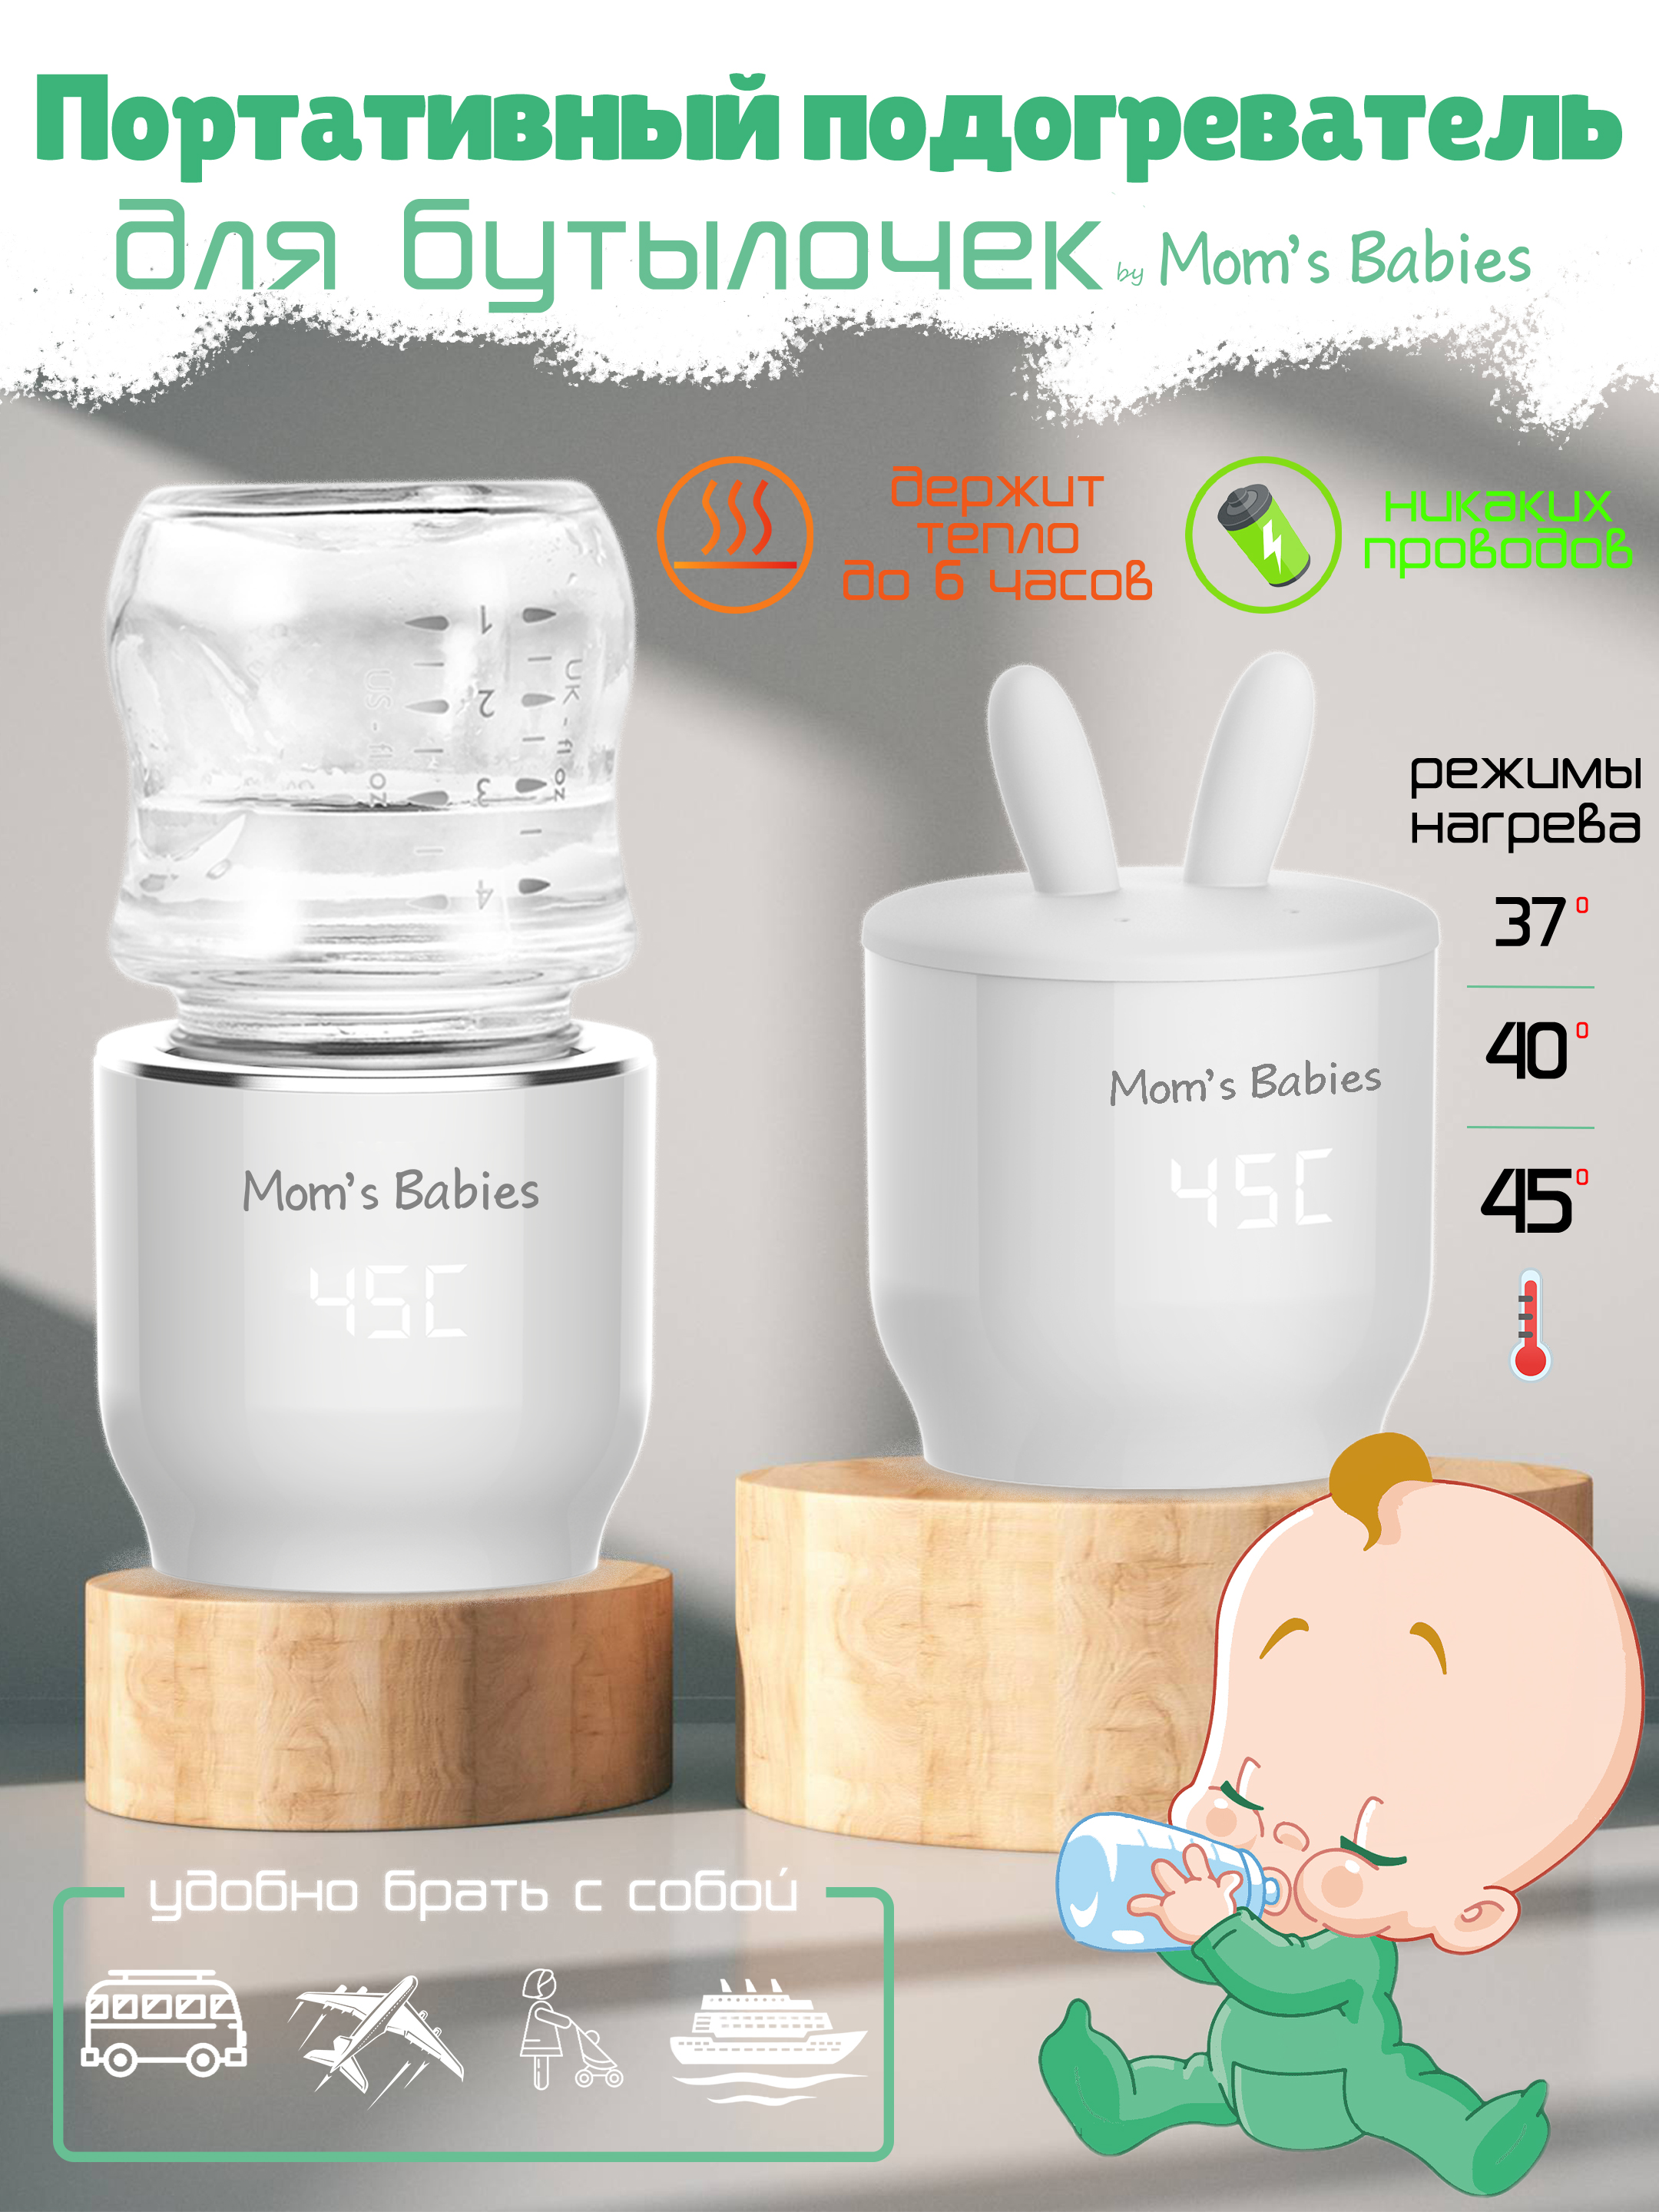 Портативный подогреватель Mom's Babies FS01 для бутылочек и детского питания белый портативный электронный многоцелевой nitecore emr05 отпугиватель комаров и мошек